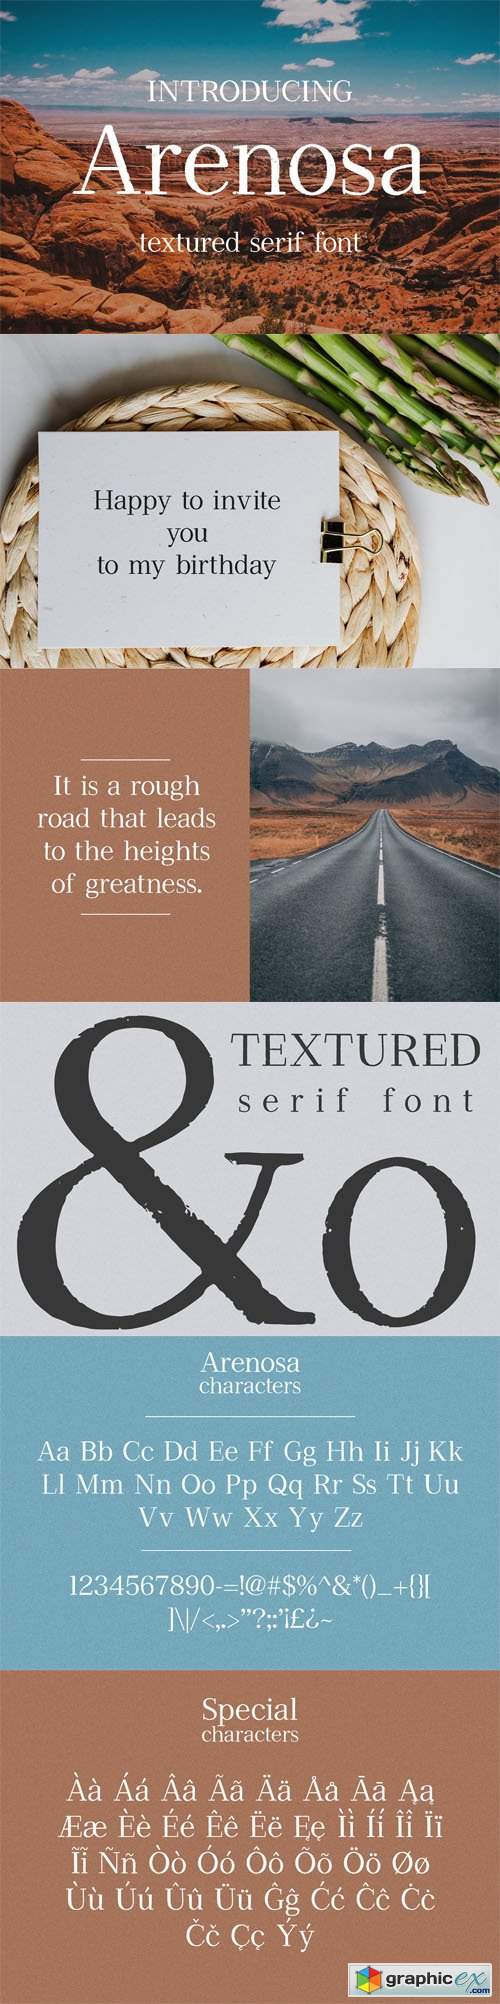  Arenosa - Textured Serif Font 